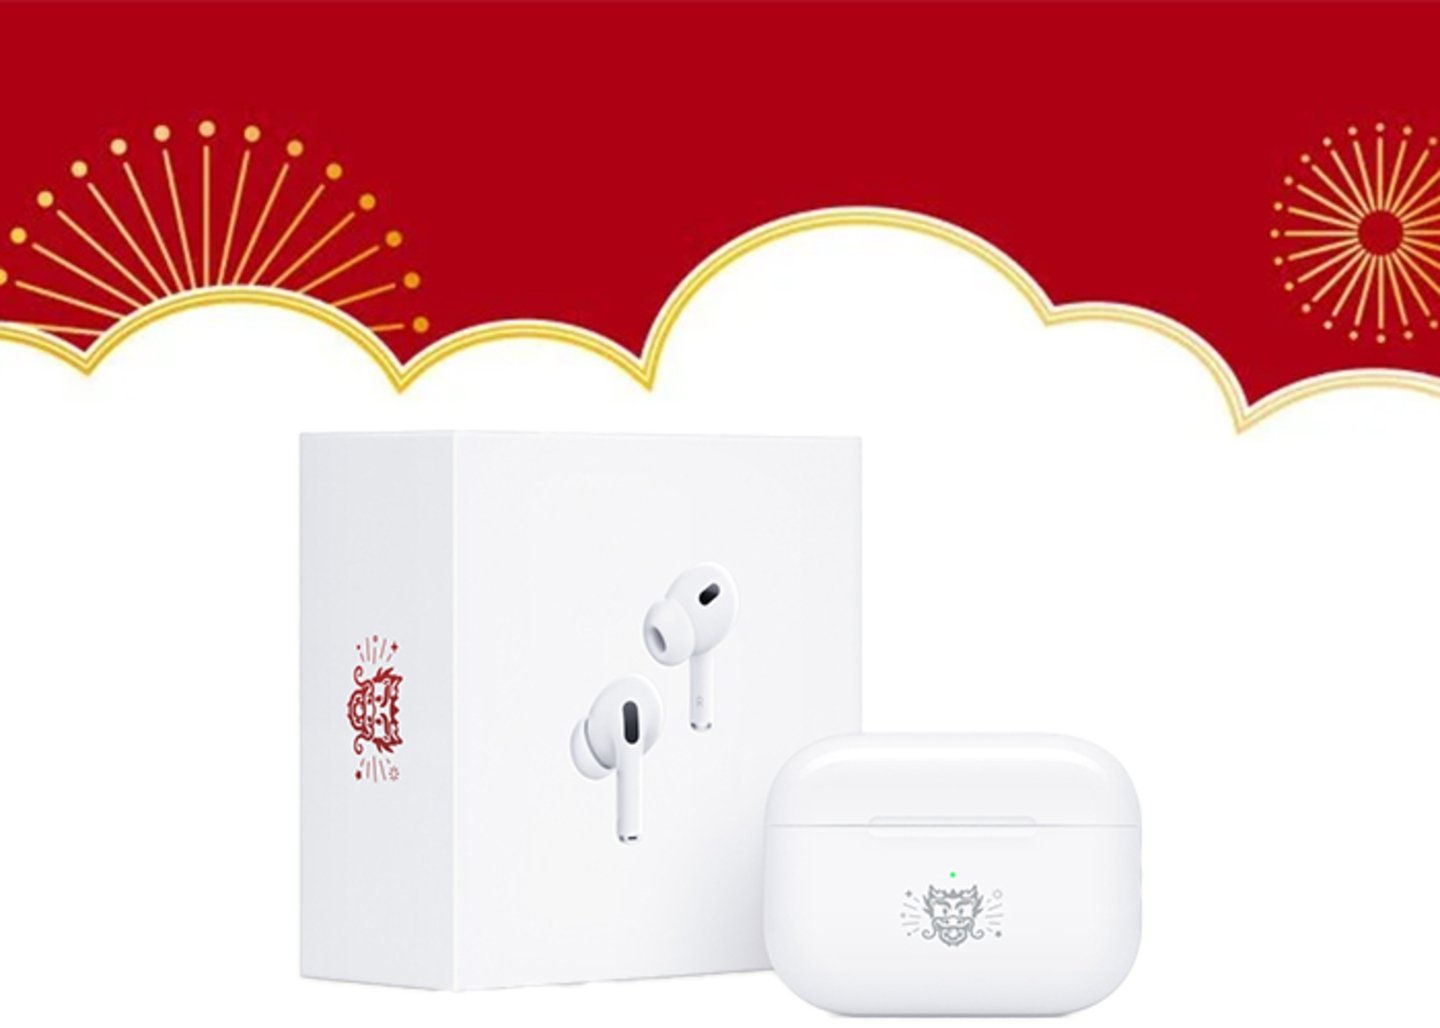 Así son los AirPods exclusivos por el Año del Dragón que Apple vende en China